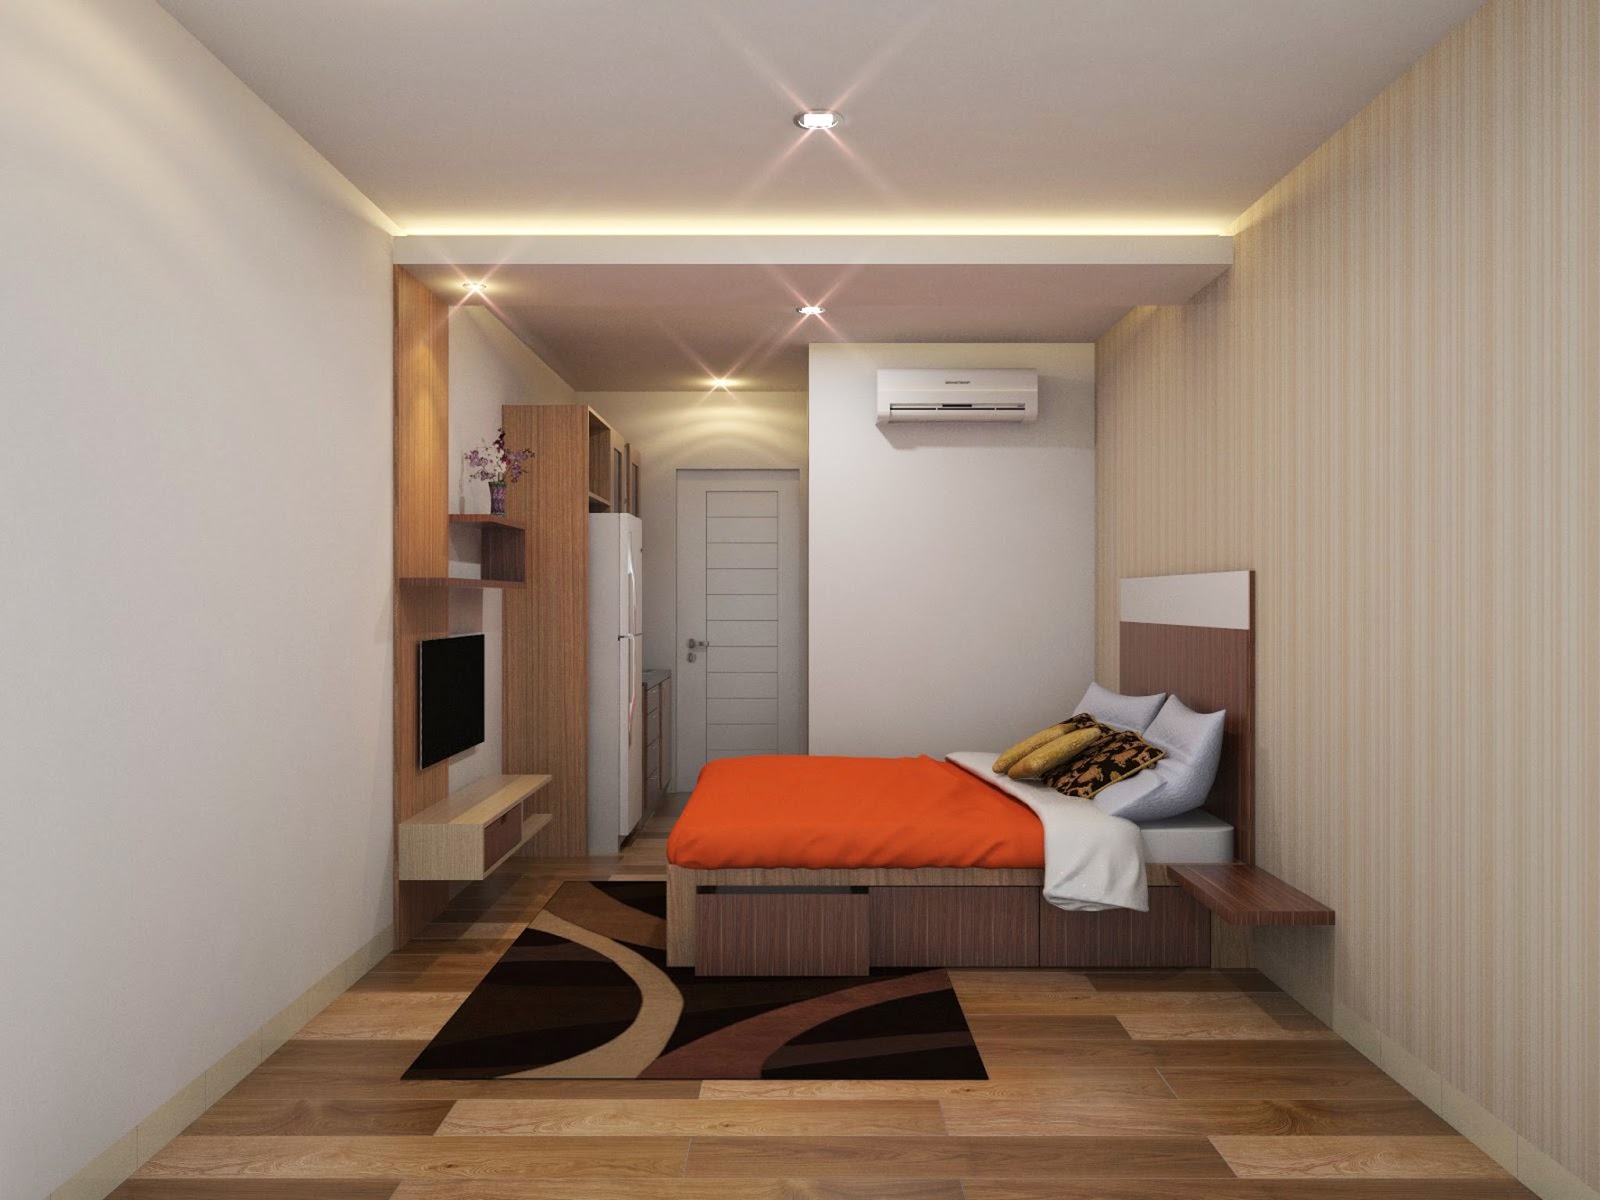  Desain Interior Rumah Minimalis Bandung  Jual Bata Ekspos